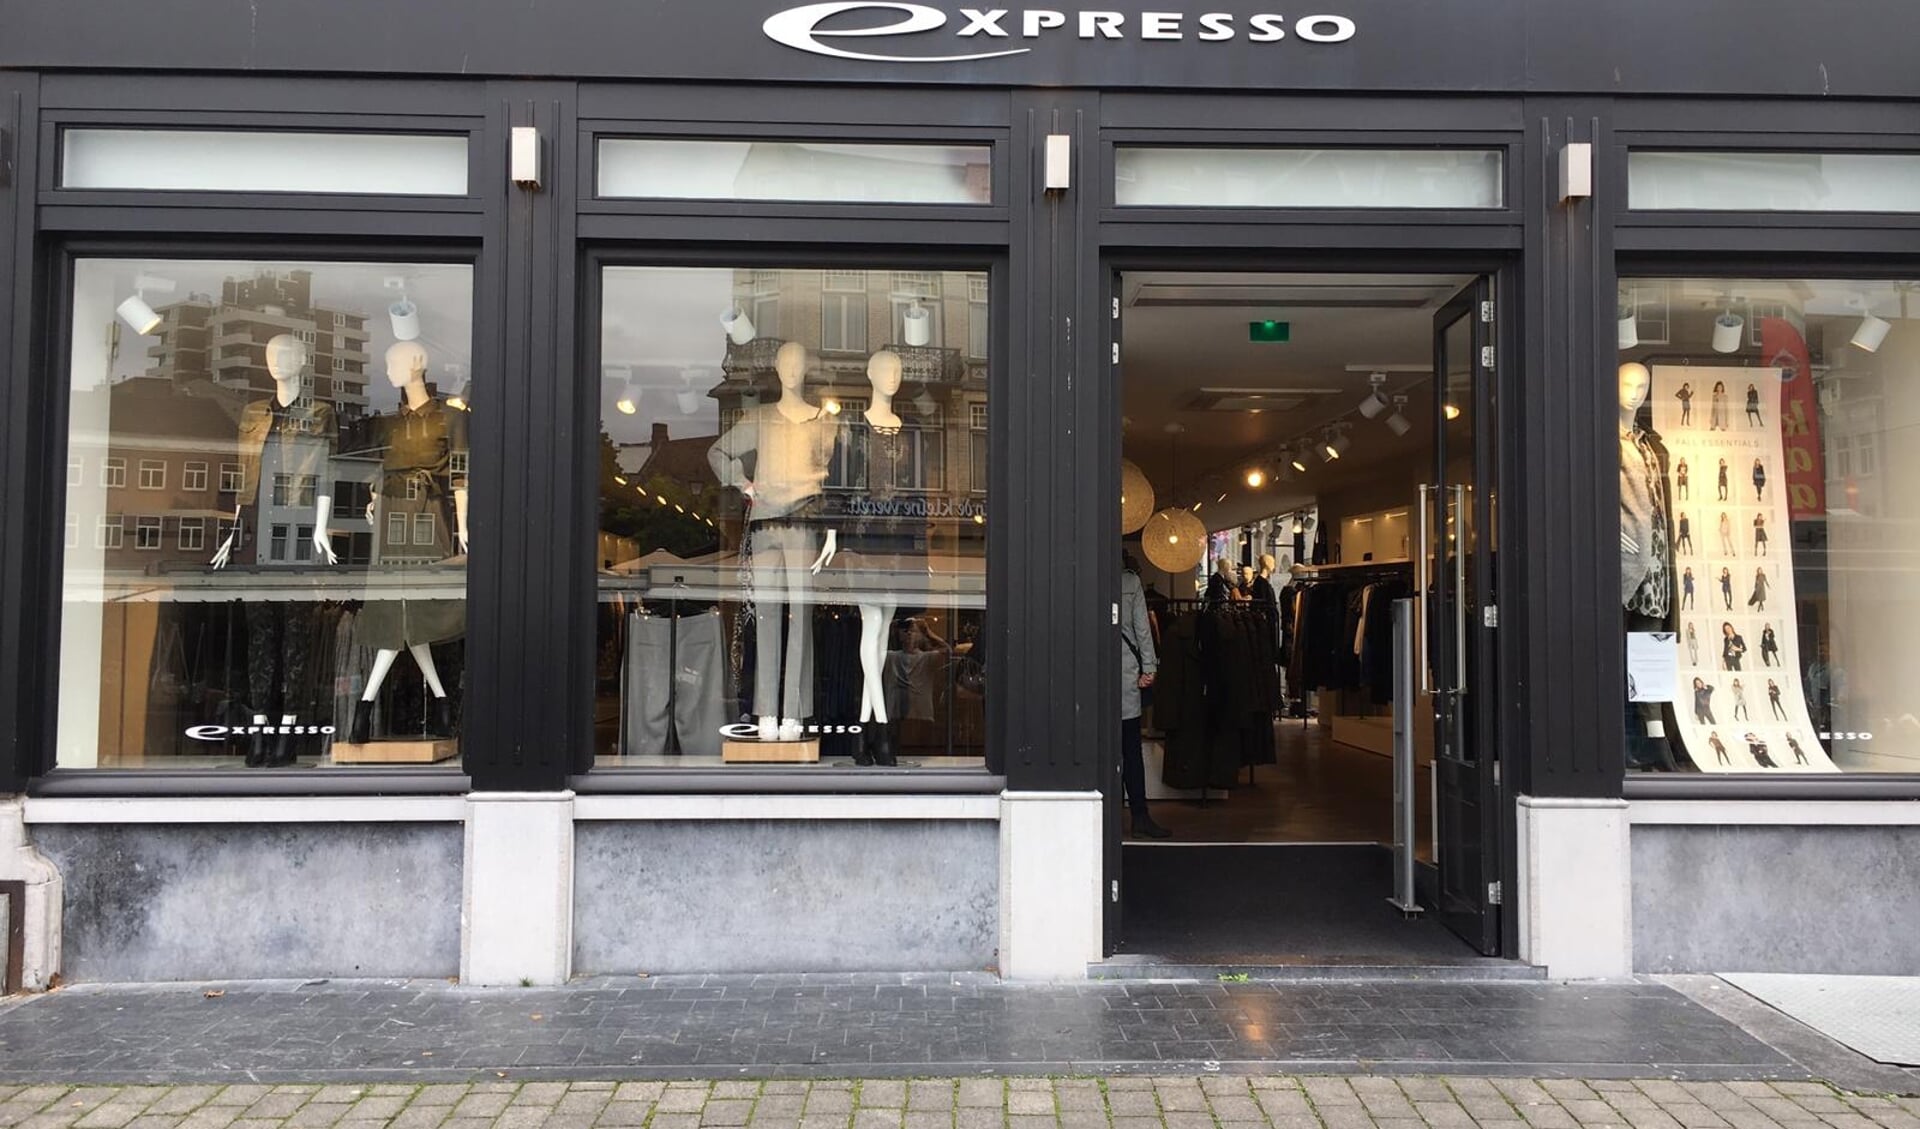 Ook de Expresso-winkel in Lisse blijft open (niet de winkel op de foto).